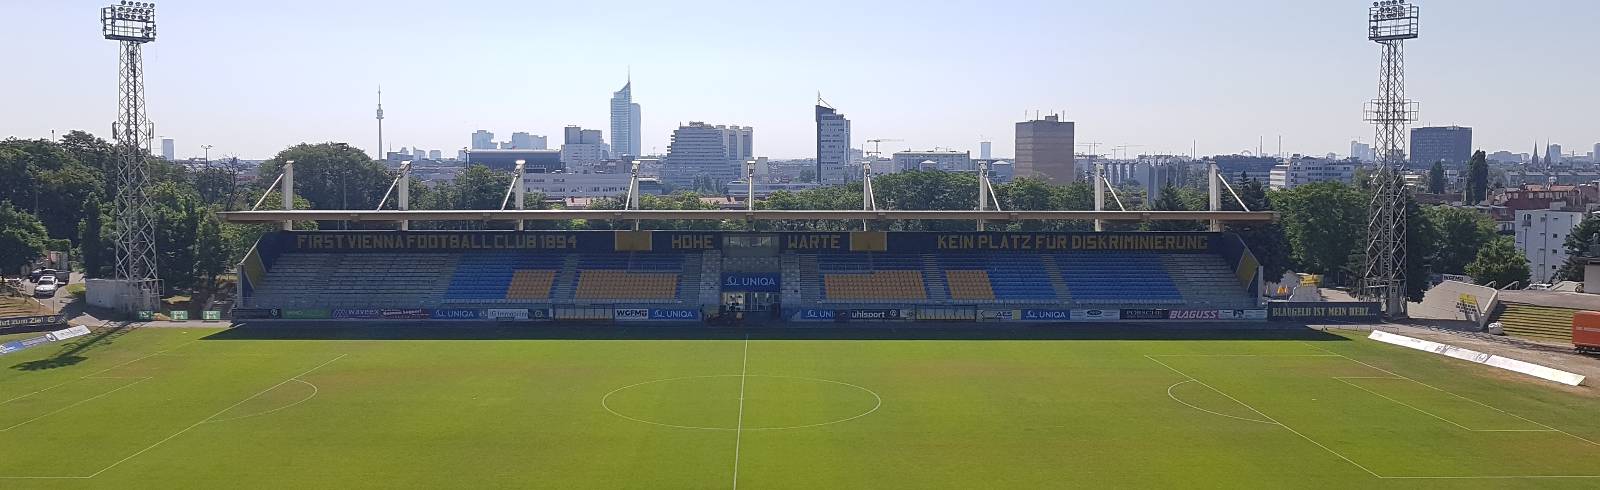 Stadion Hohe Warte: 100 Jahre blau-gelbes Zuhause